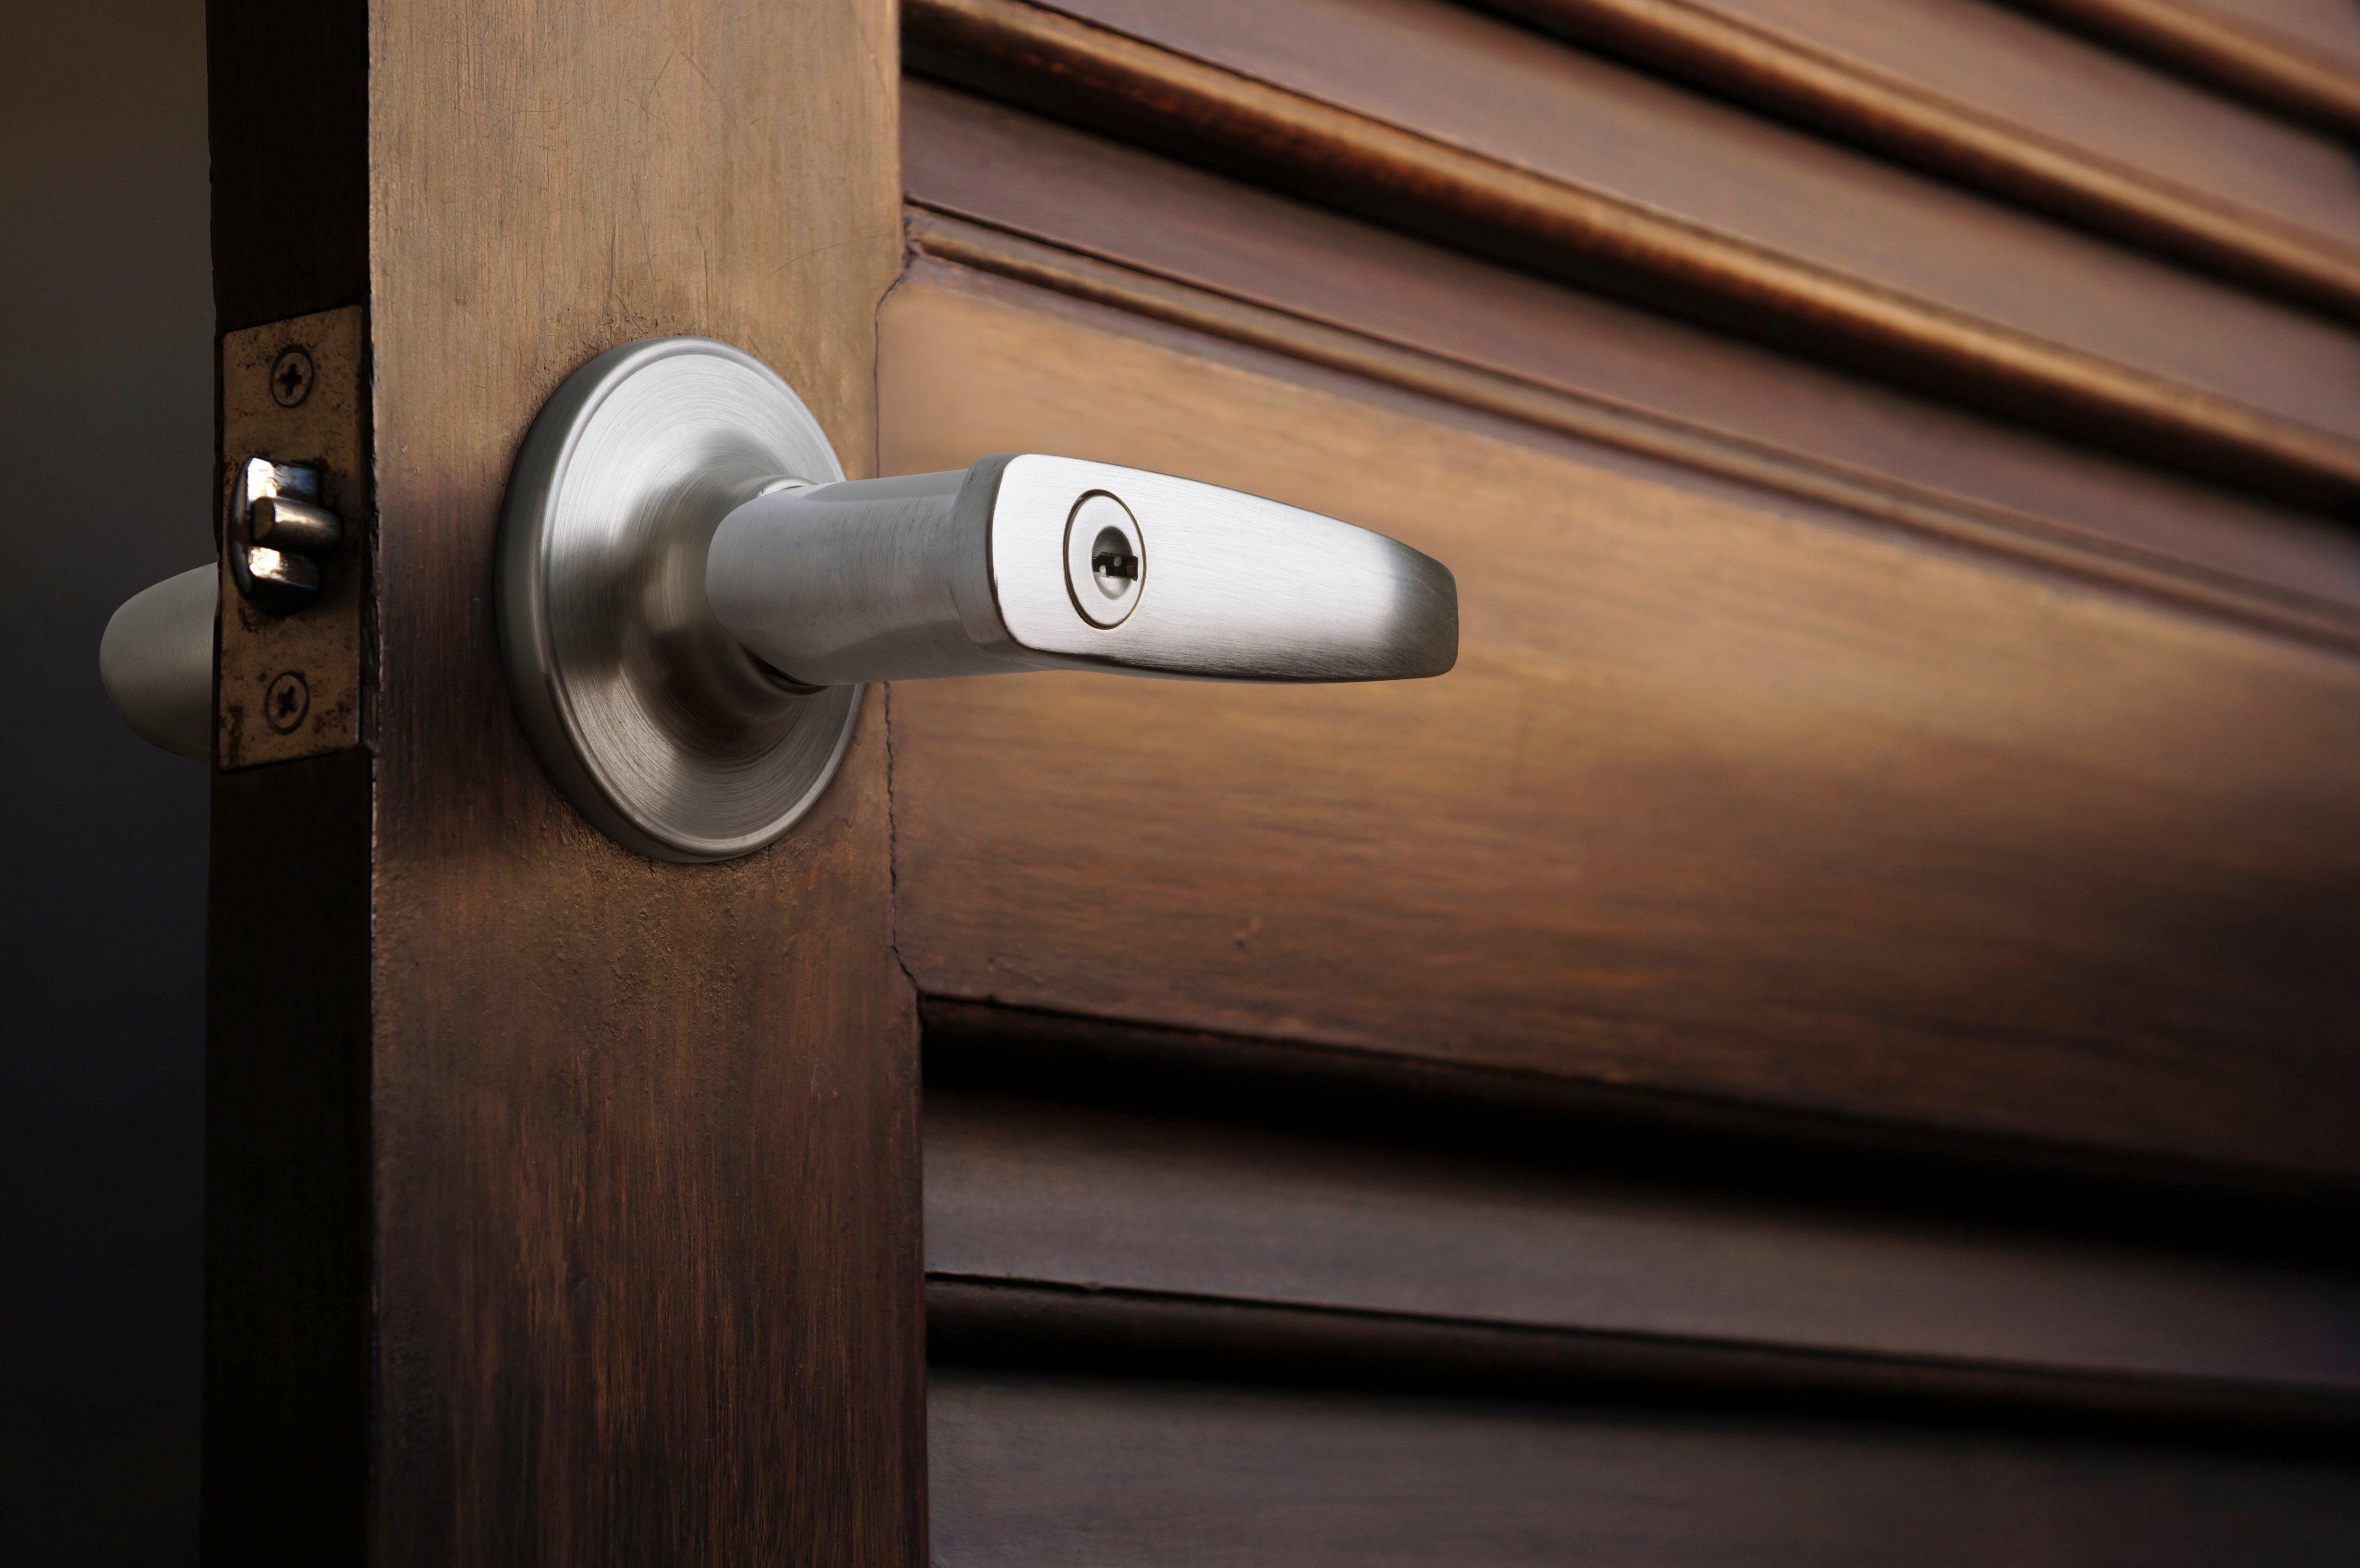 Closeup of a locking door handle on a wooden door.